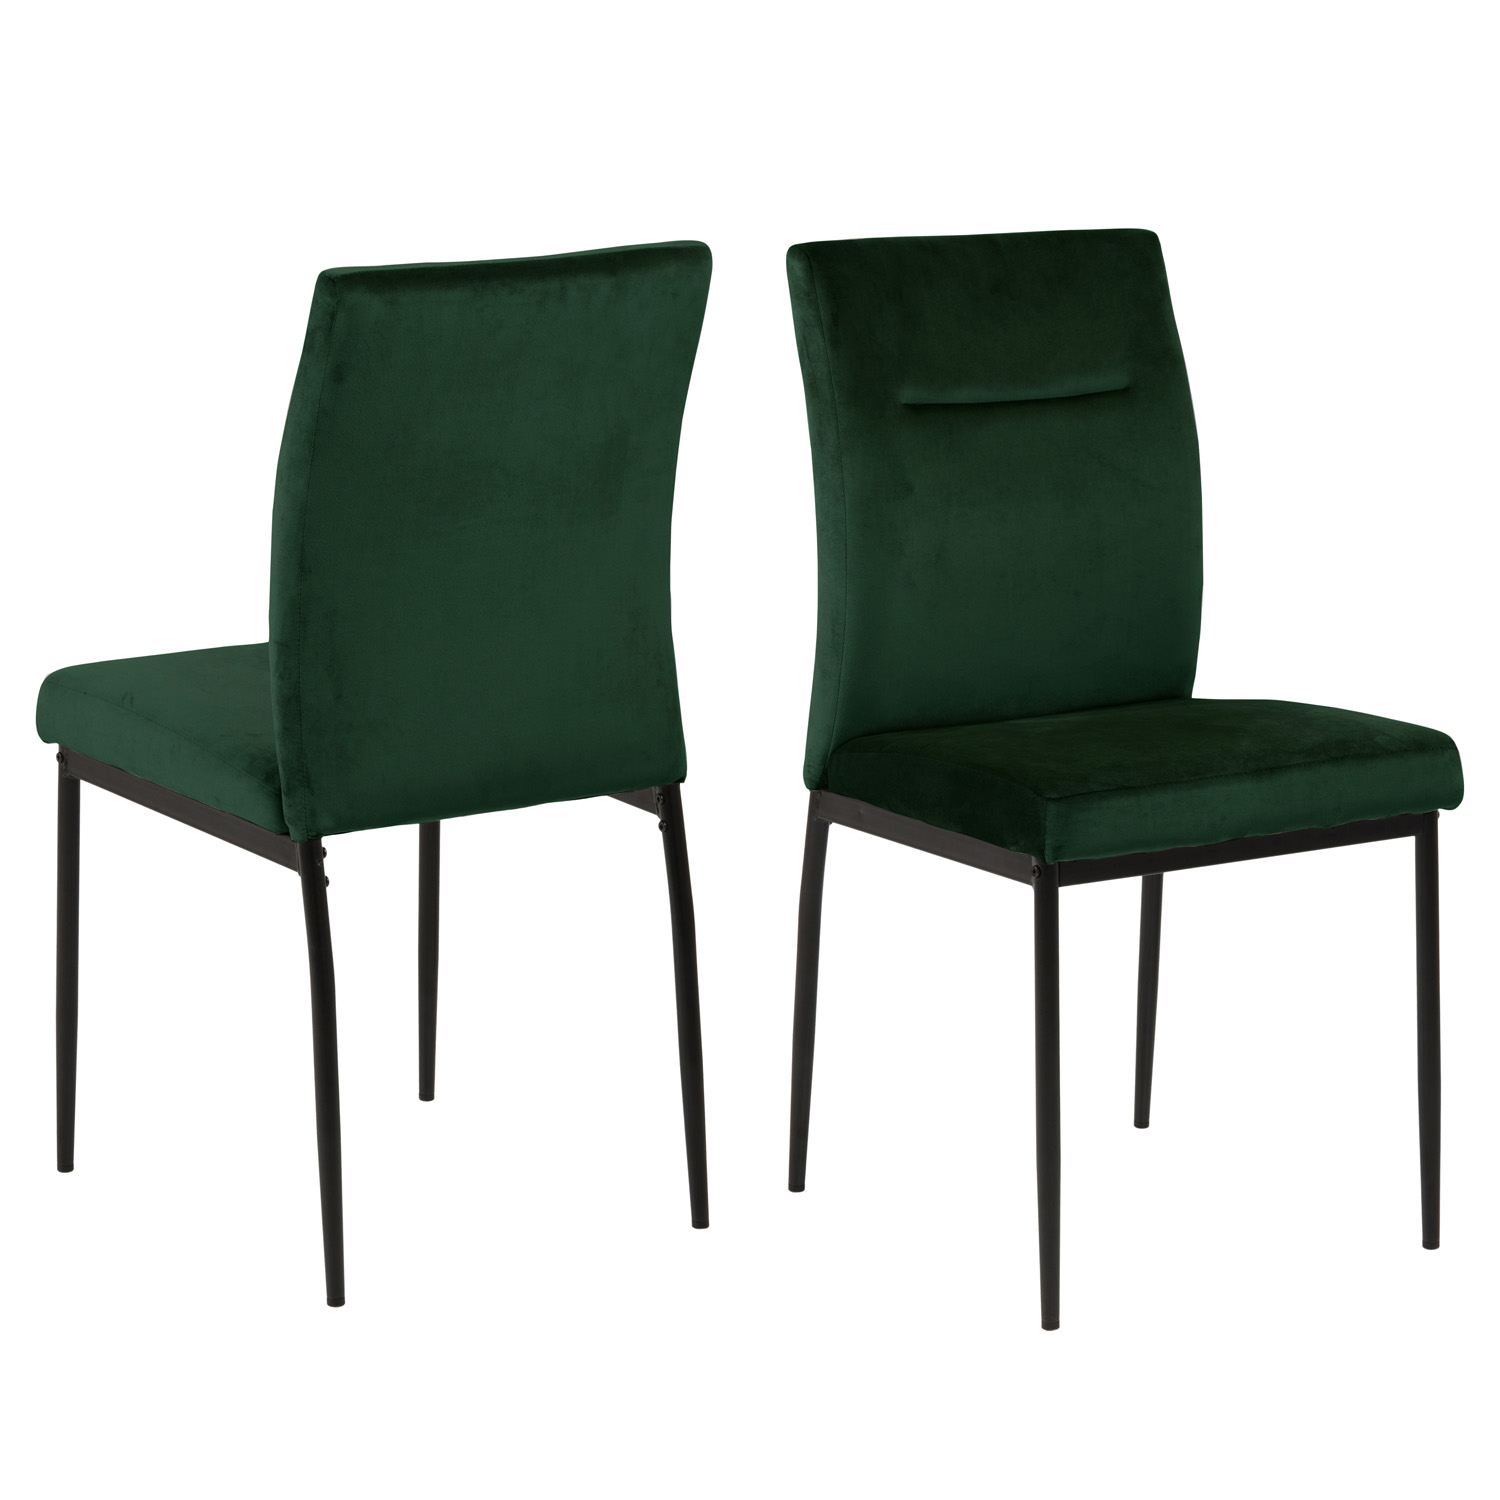 ACT NORDIC Demi spisebordsstol - mørkegrøn polyester og sort metal